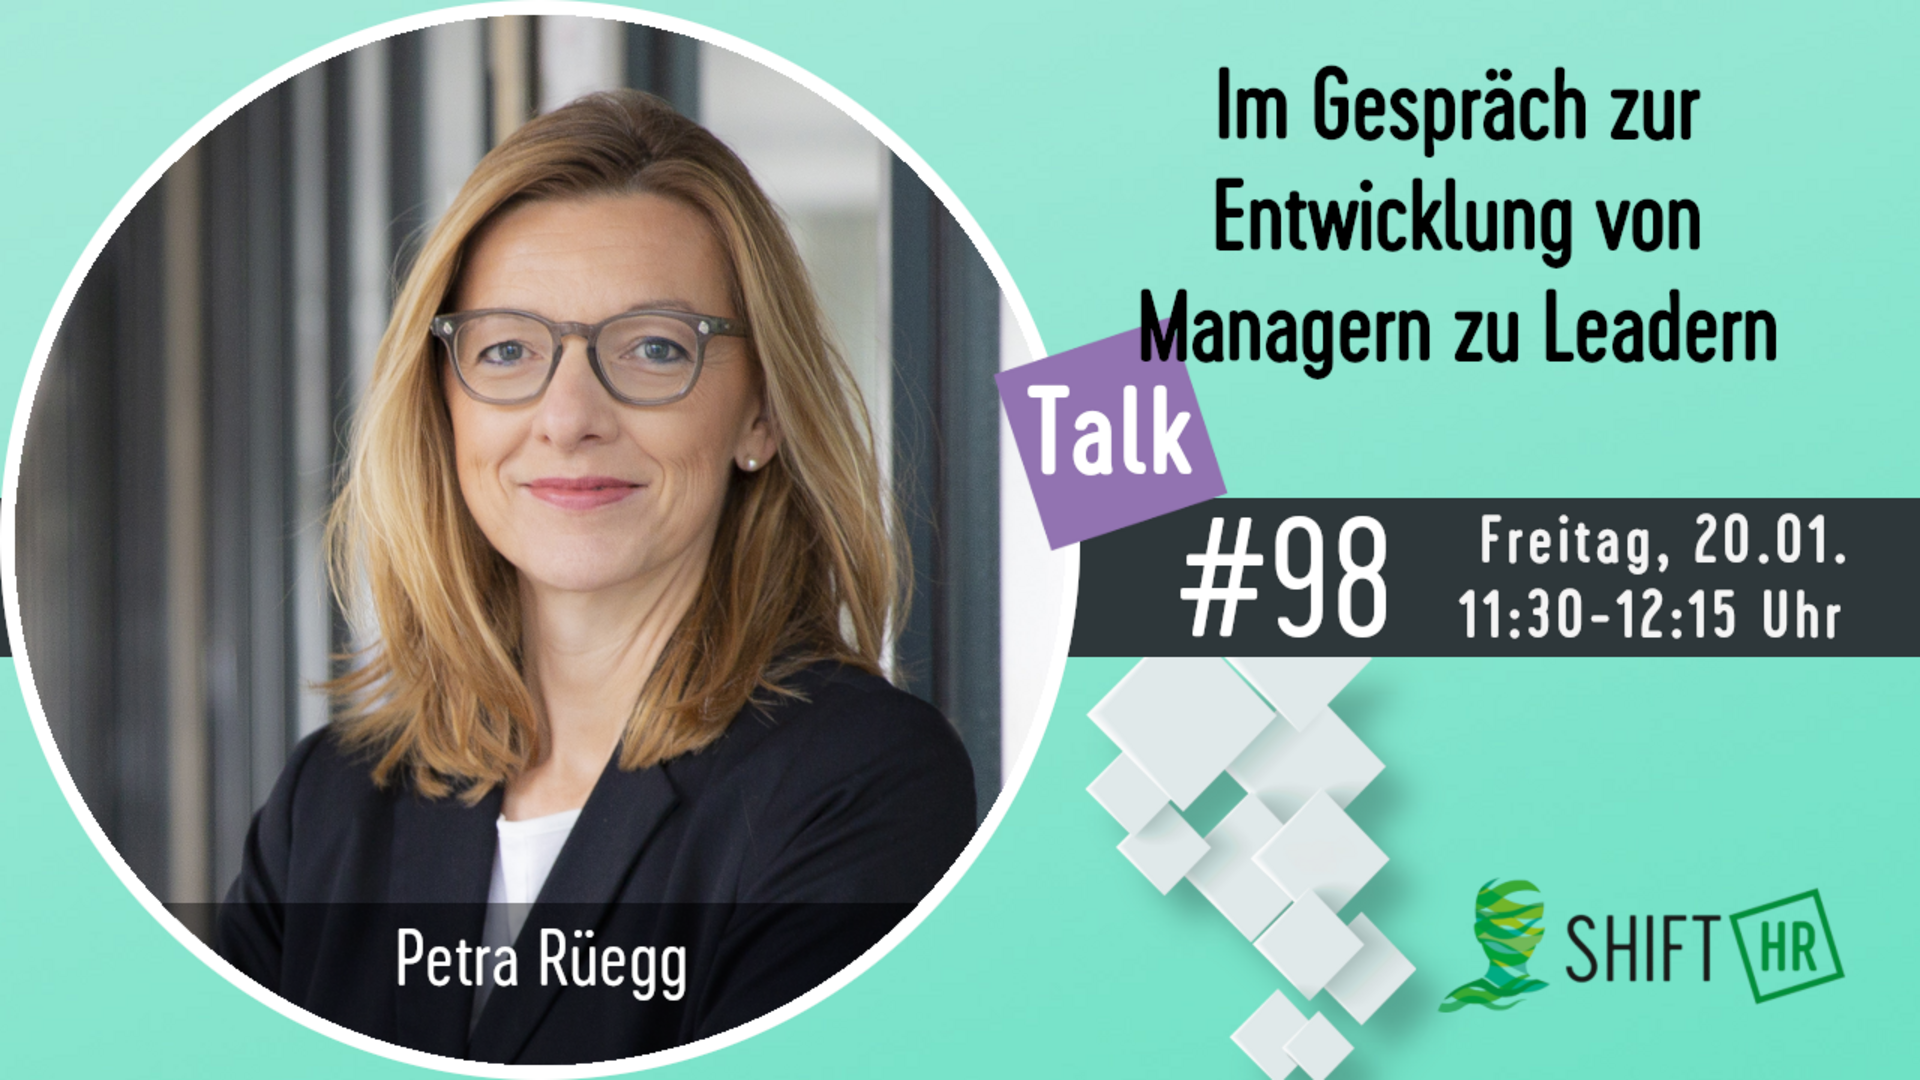 Im Gespräch mit Petra Rüegg zu den Herausforderungen für die Führungskräfte auf dem Weg von Managern zu Leadern